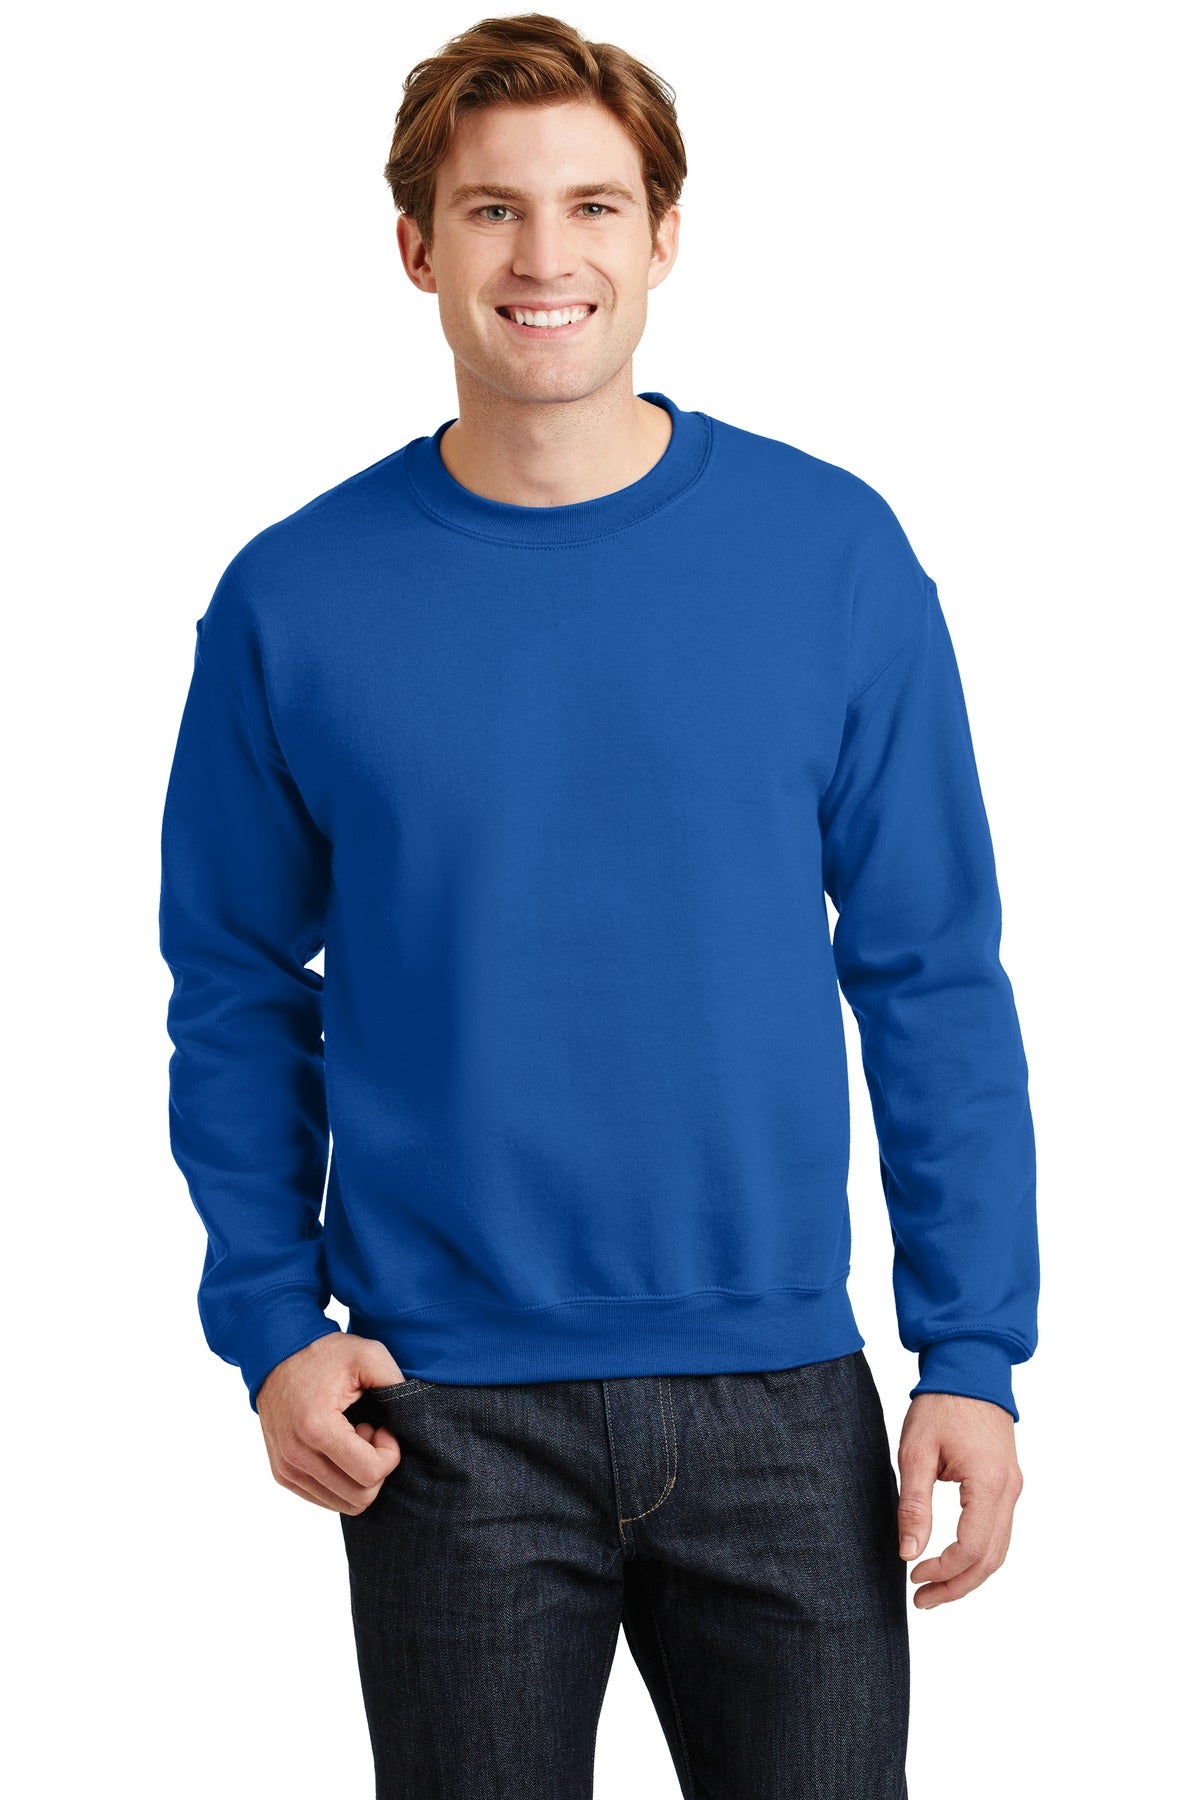 Gildan Men's Heavy Blend Crewneck Sweatshirt - 18000 